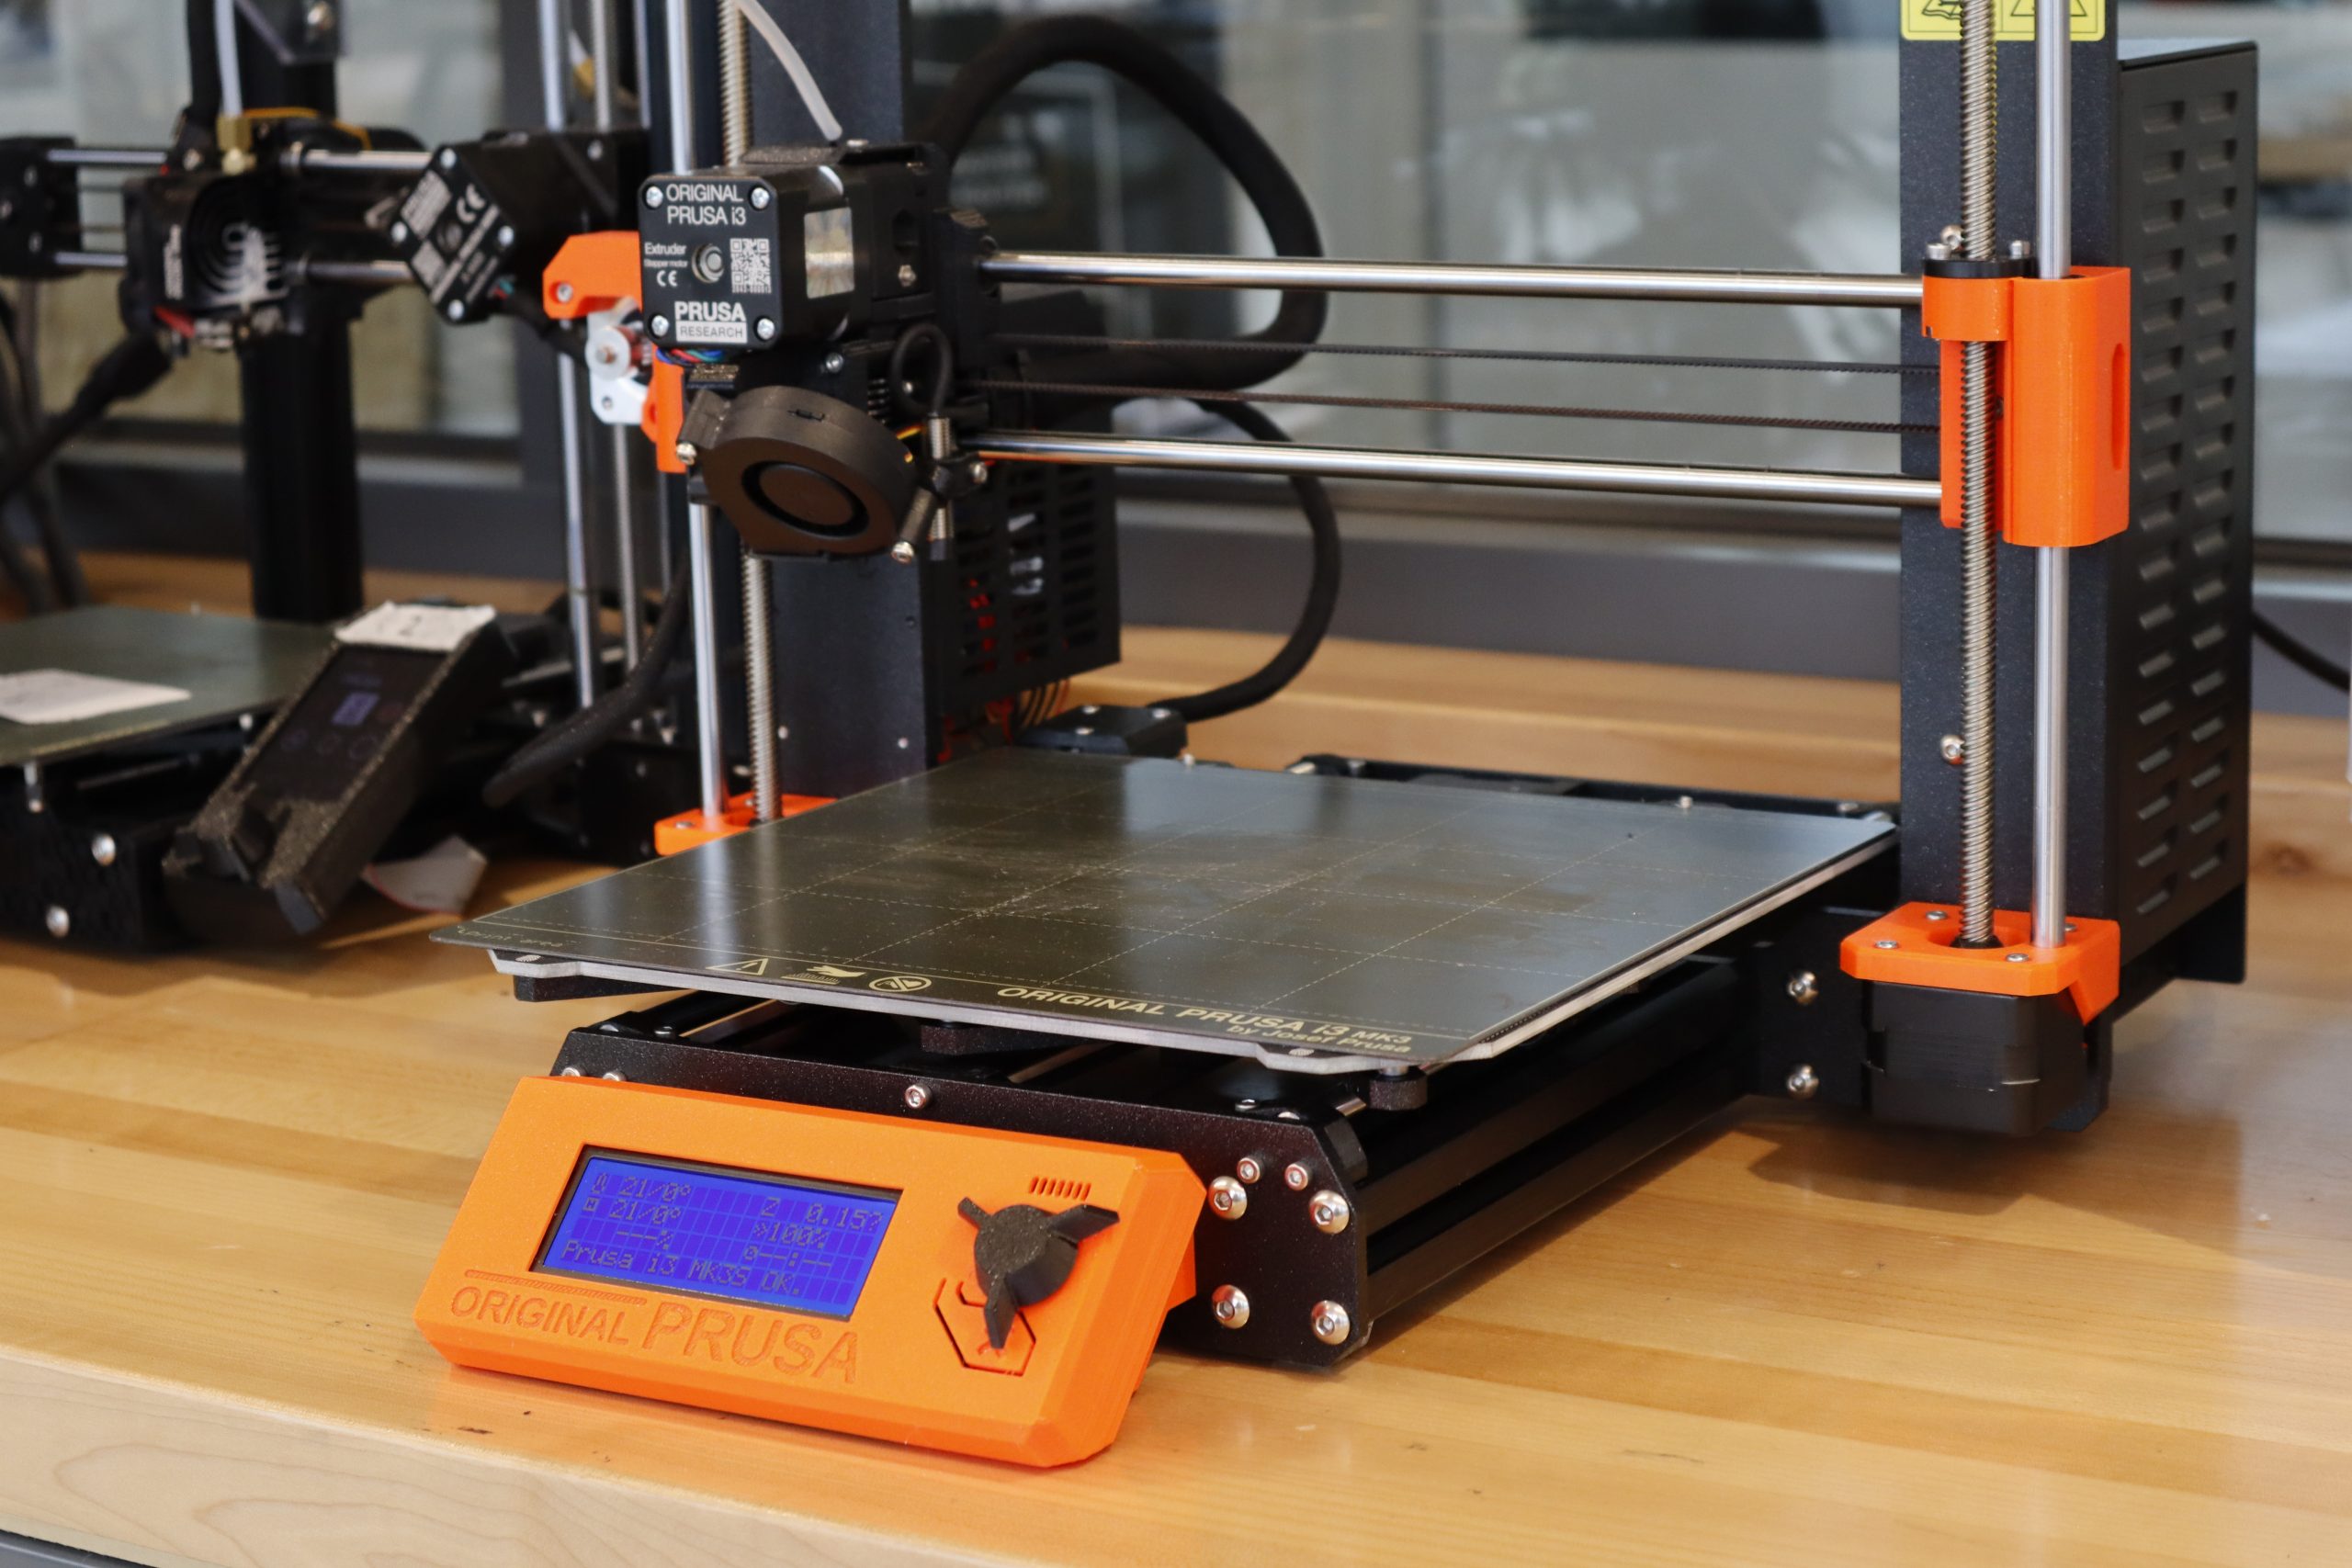 Prusa i3 3D printer